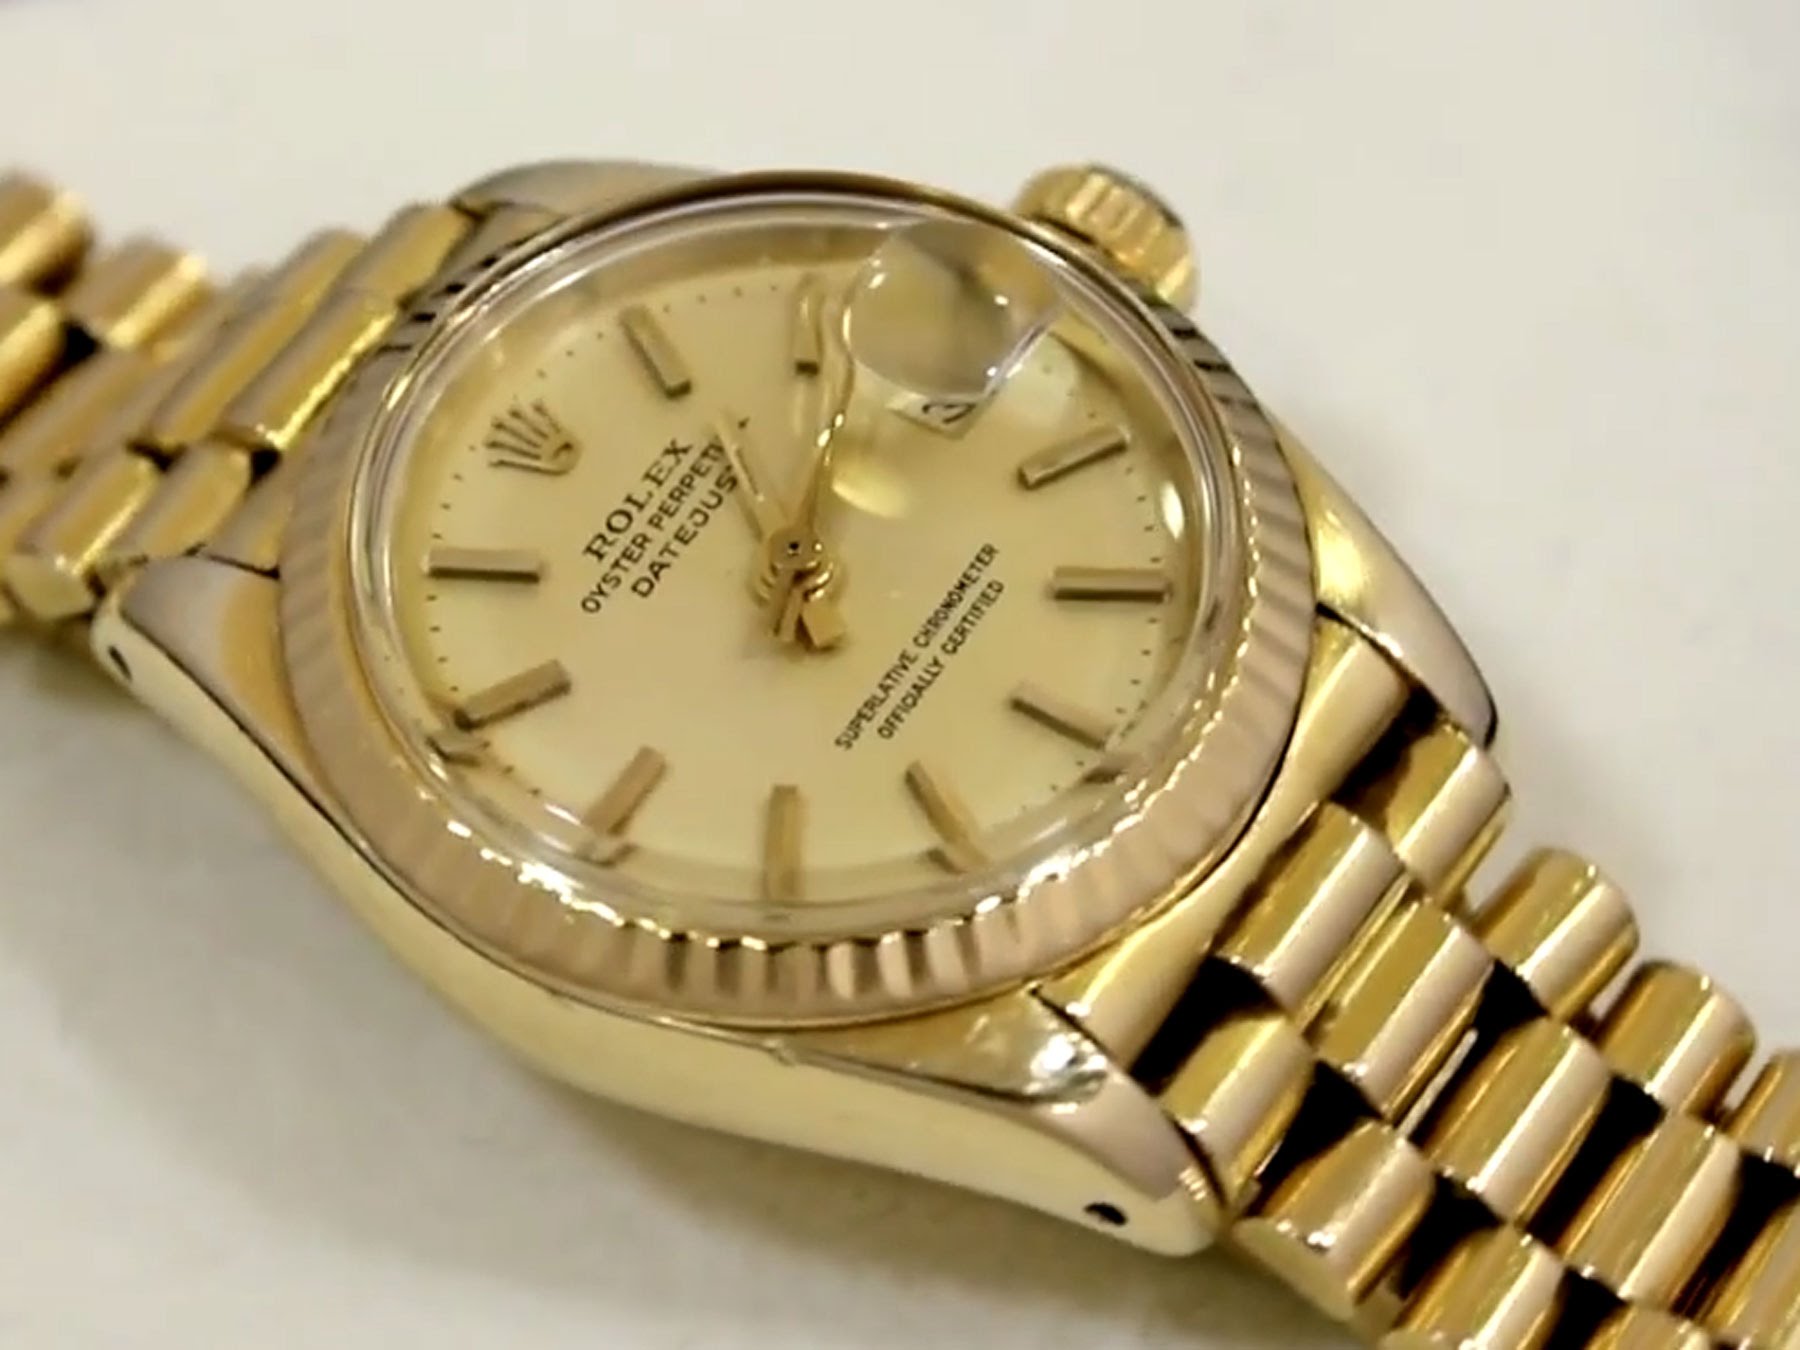 Mua đồng hồ Rolex cũ chính hãng ở đâu? 2